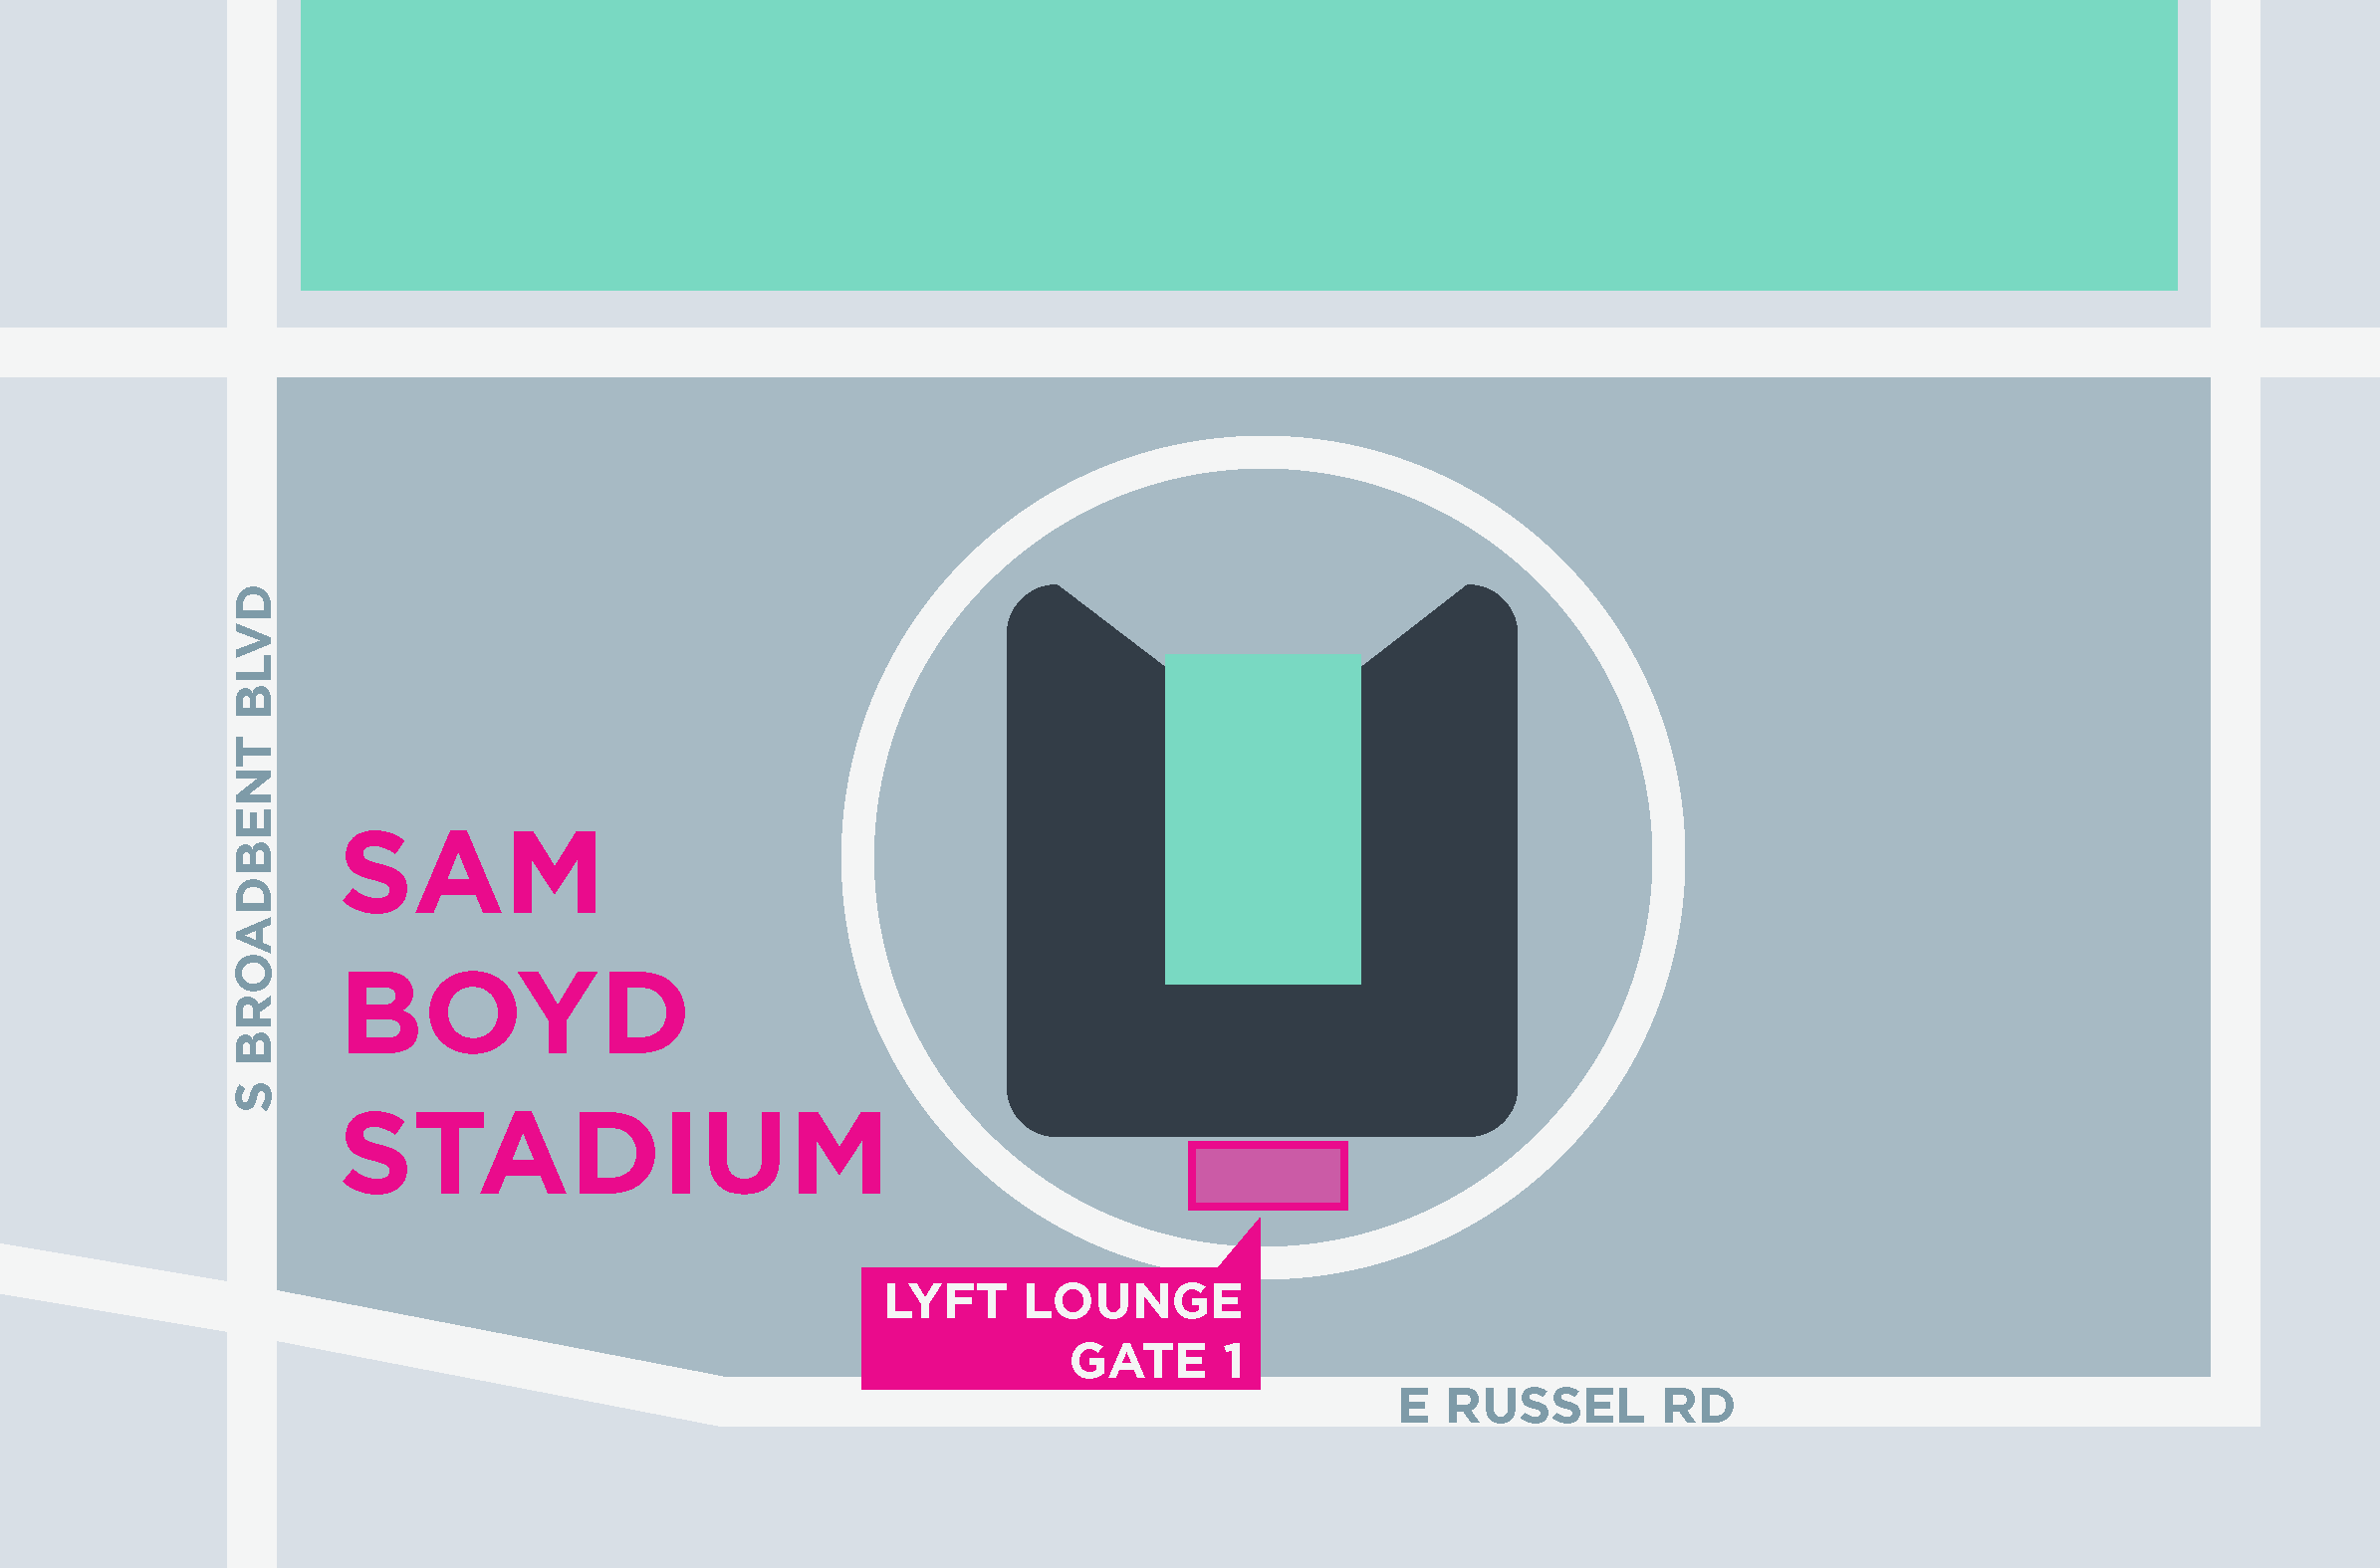 Cette image montre une carte du stade Sam Boyd, y compris les zones de départ et d'arrivée.